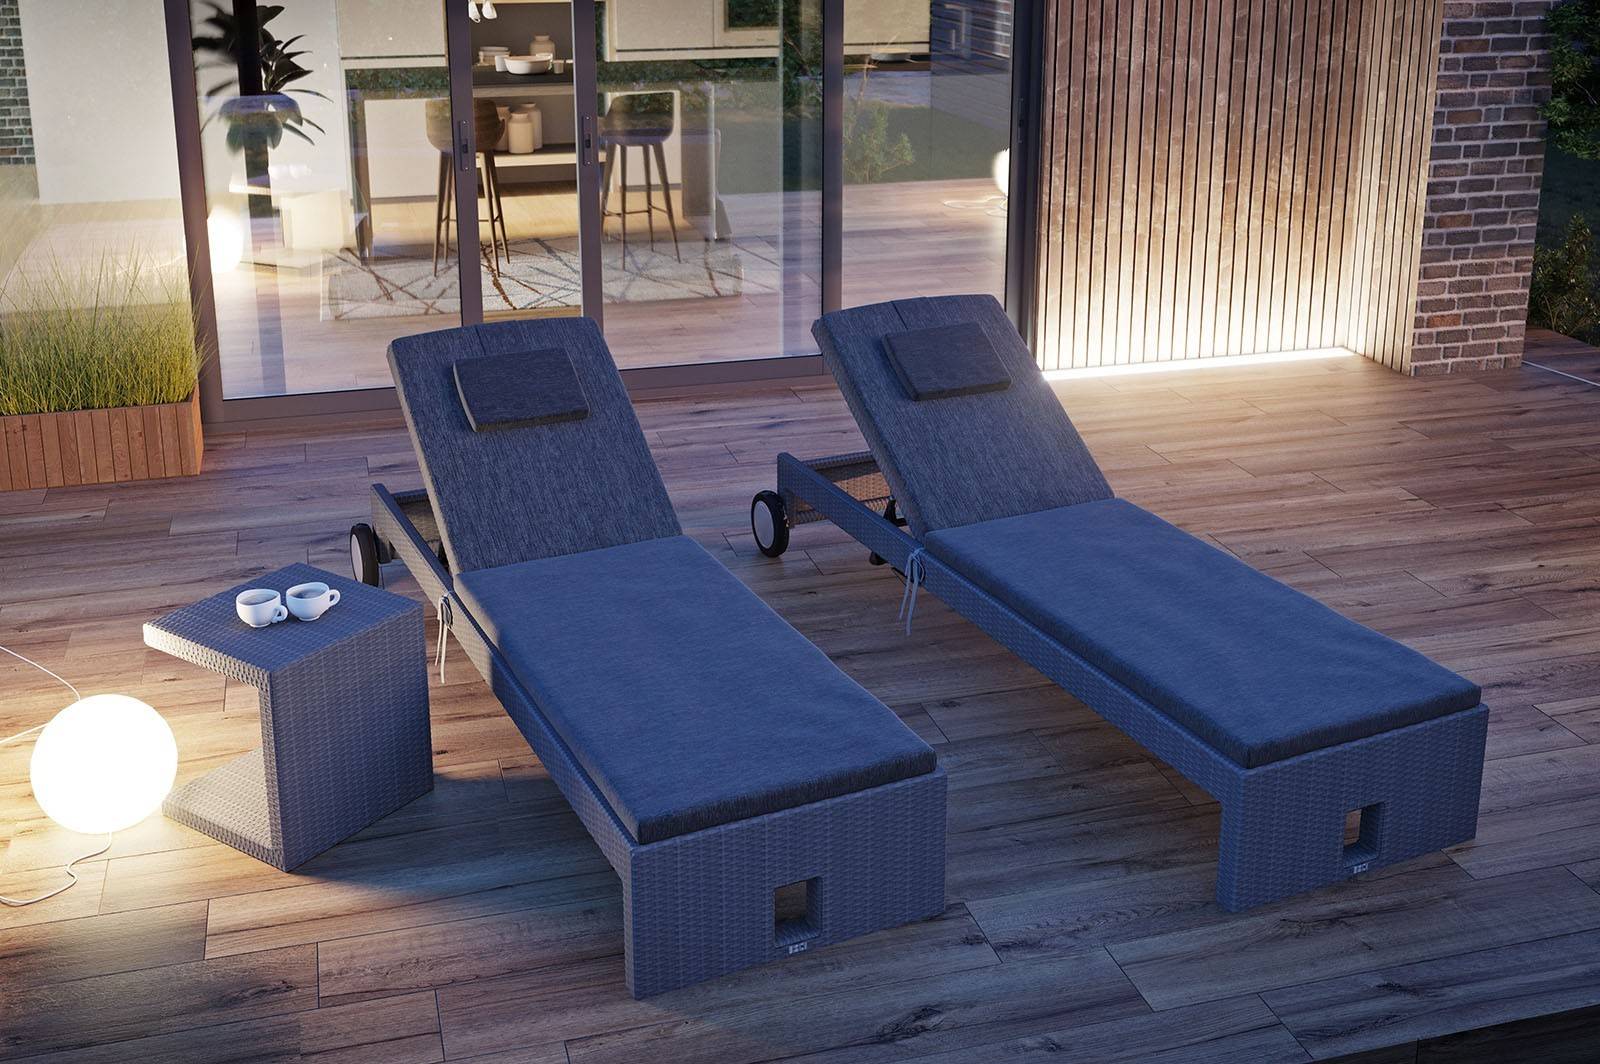 Chaise longue da giardino (letto da giardino) - stile e comfort in uno! Quale divano scegliere?